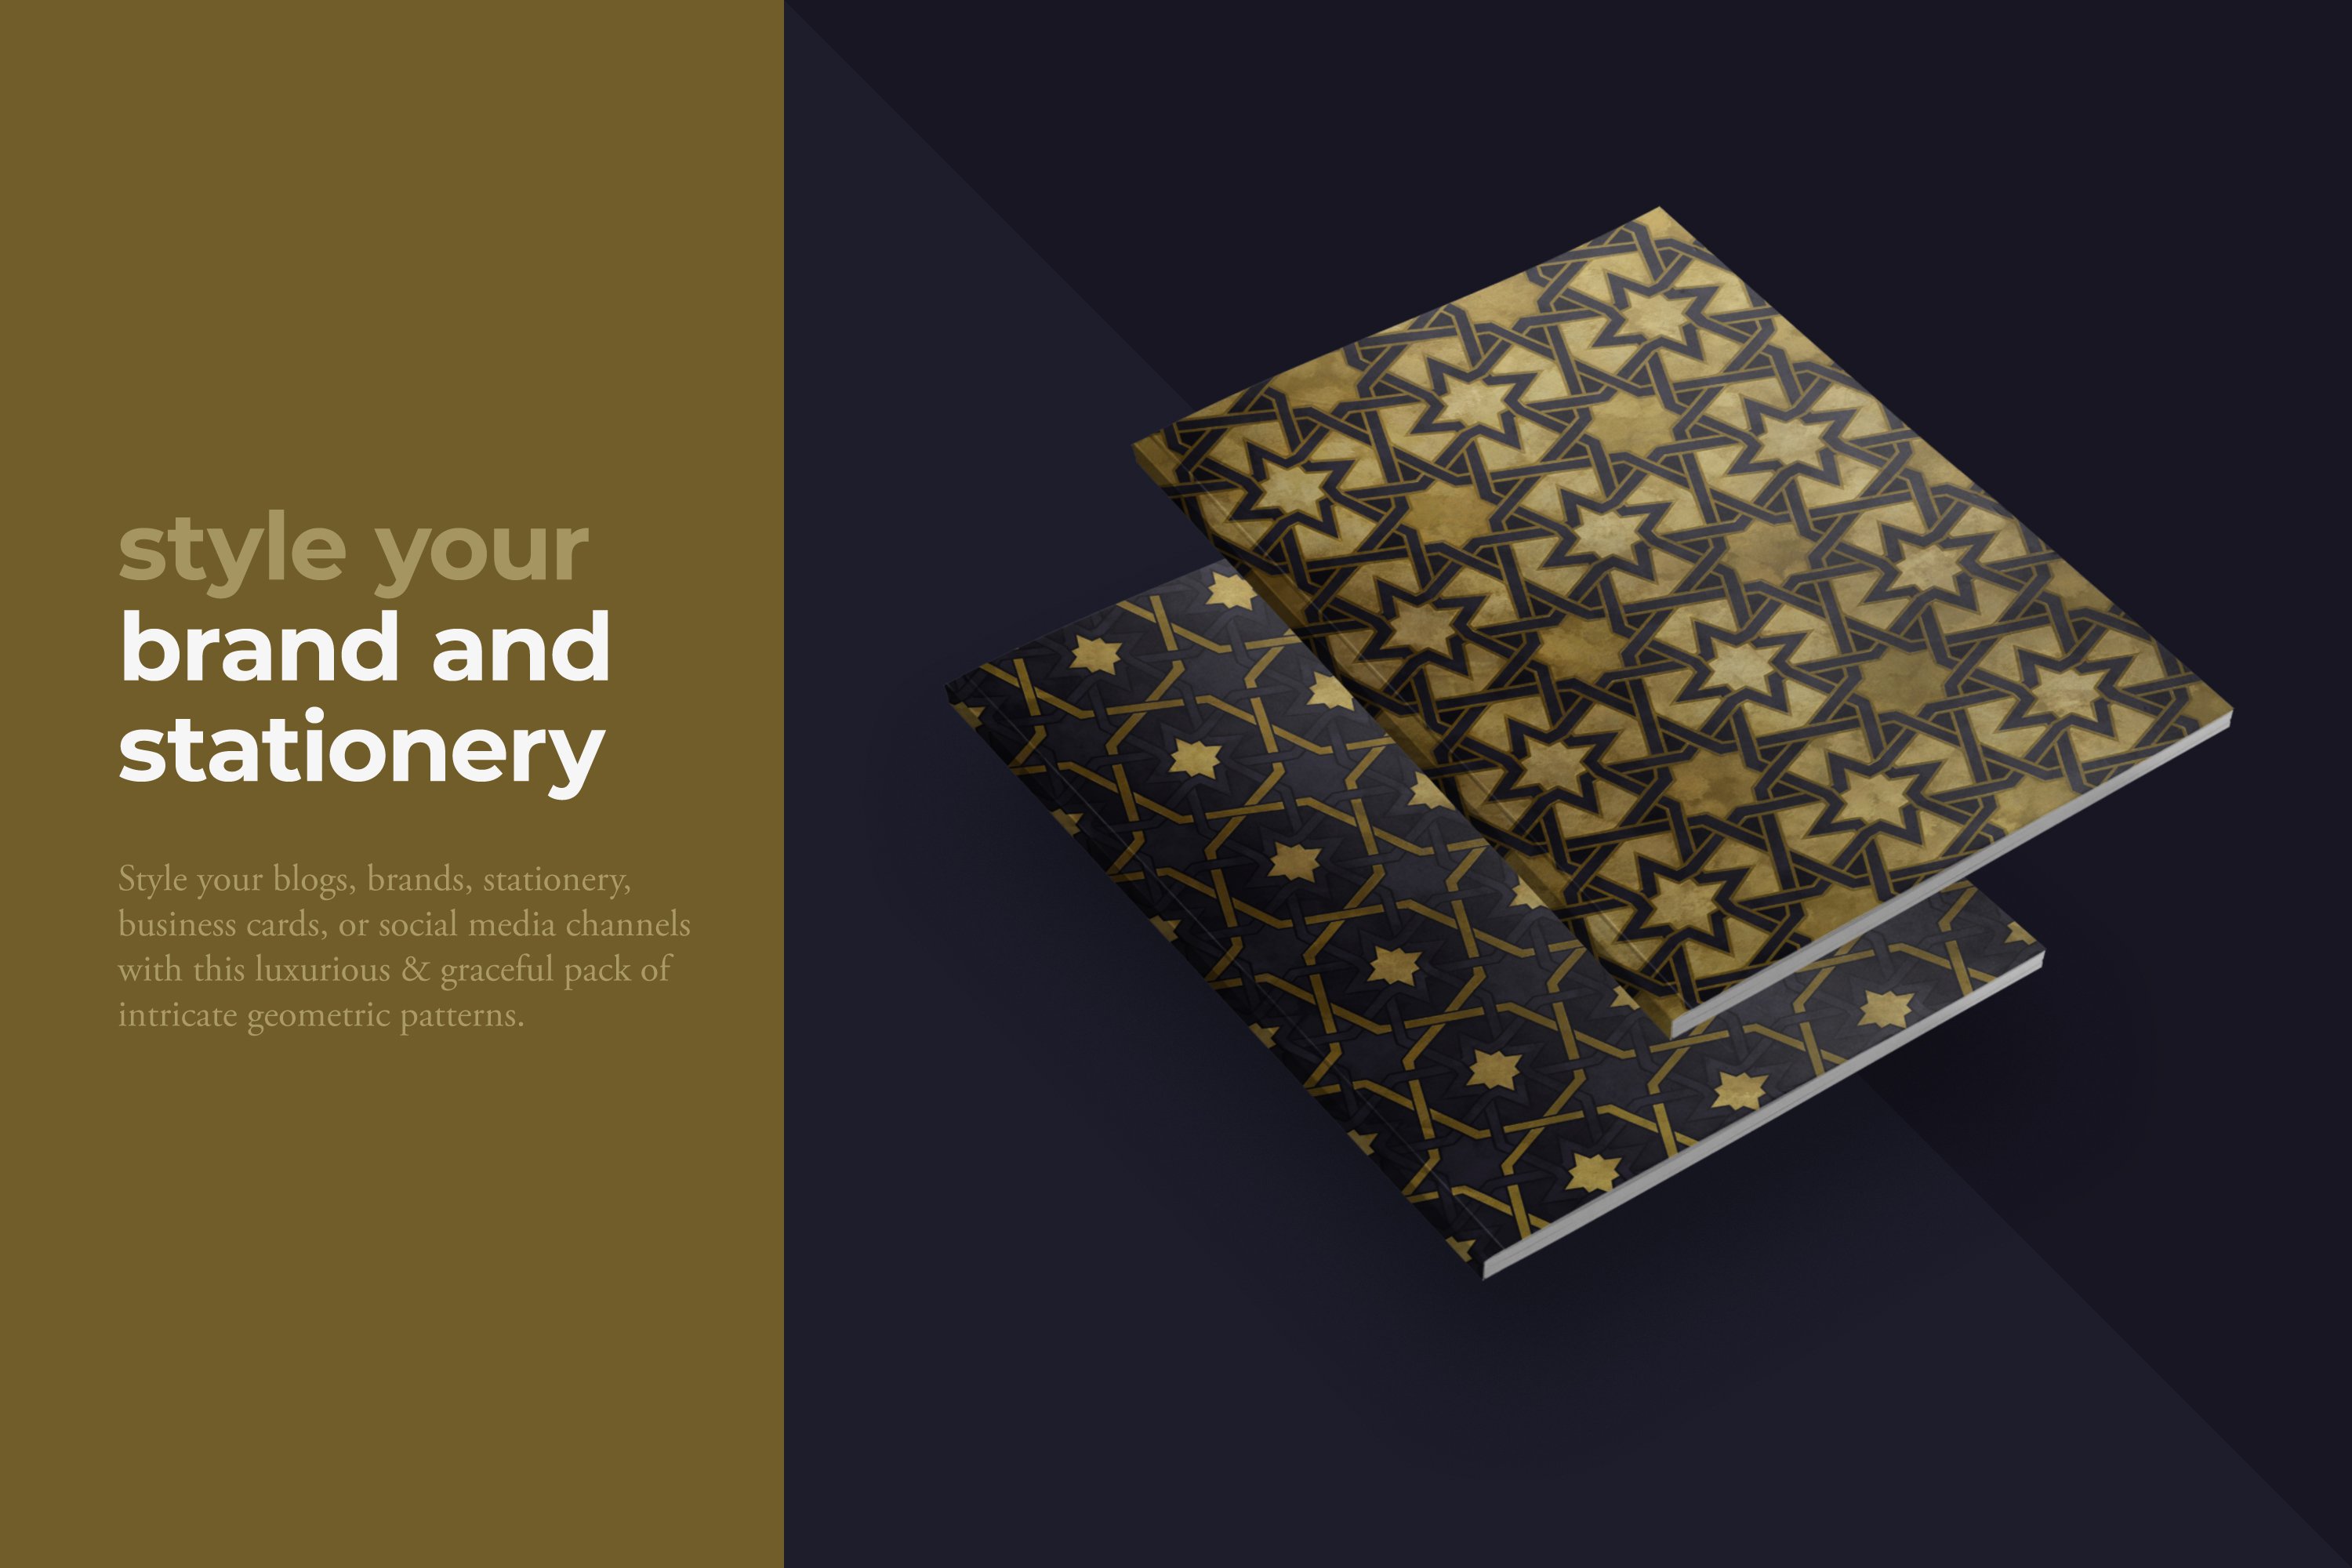 东方伊斯兰艺术曼荼罗传统几何抽象图案素材合辑 Orienta